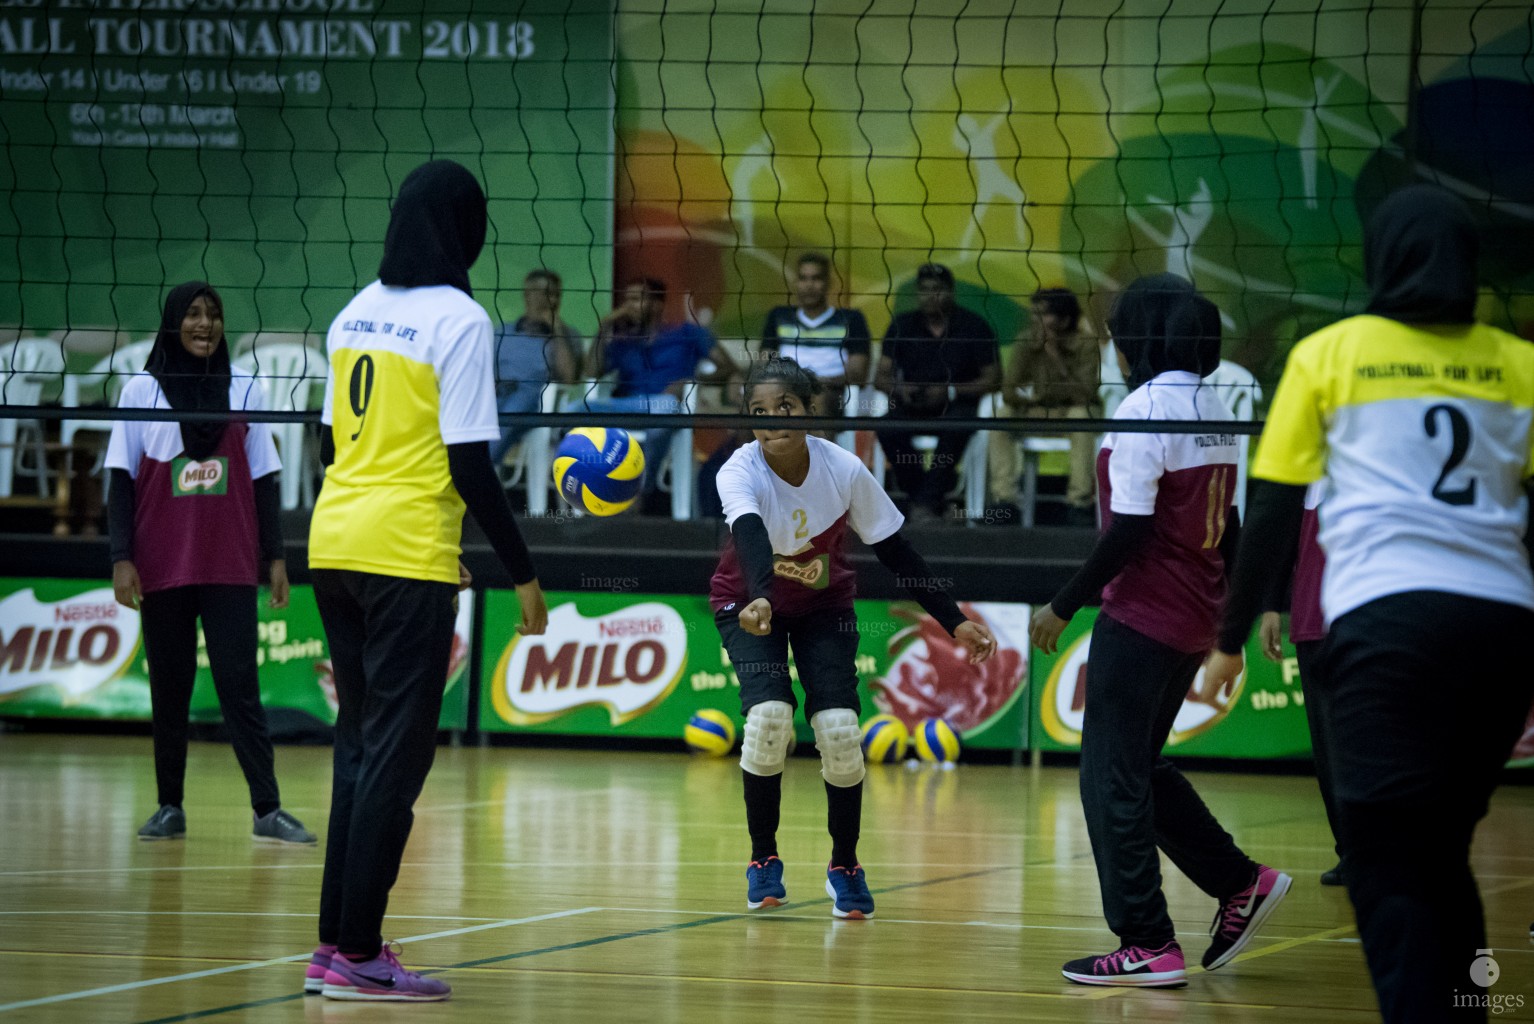 MILO Interschool Volleyball Tournament 2018 (Day 5)